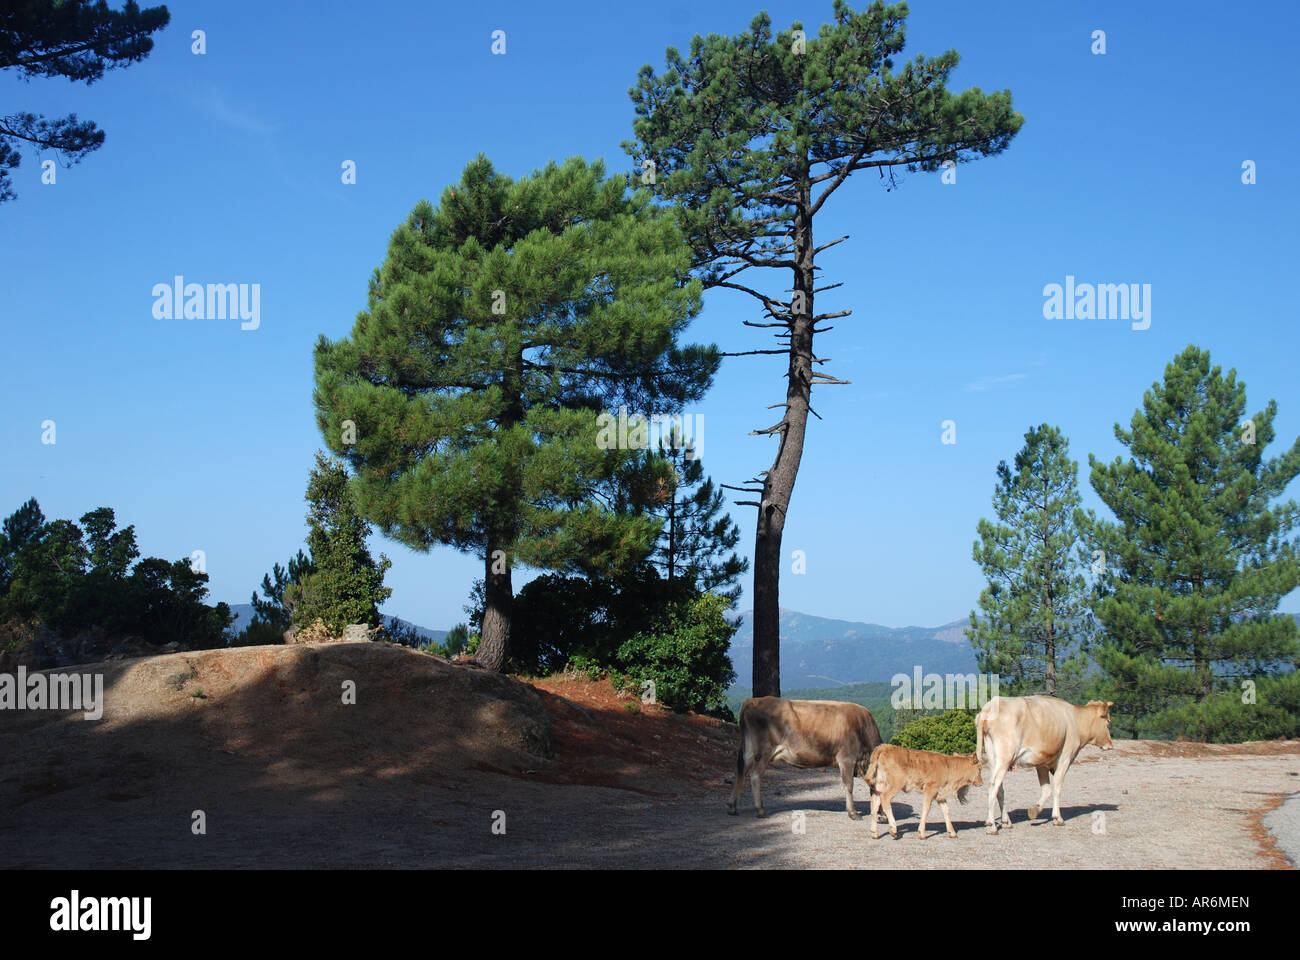 Quelques vaches sur street dans une forêt de pins au-dessus de l'île de Zonza Corse France Banque D'Images